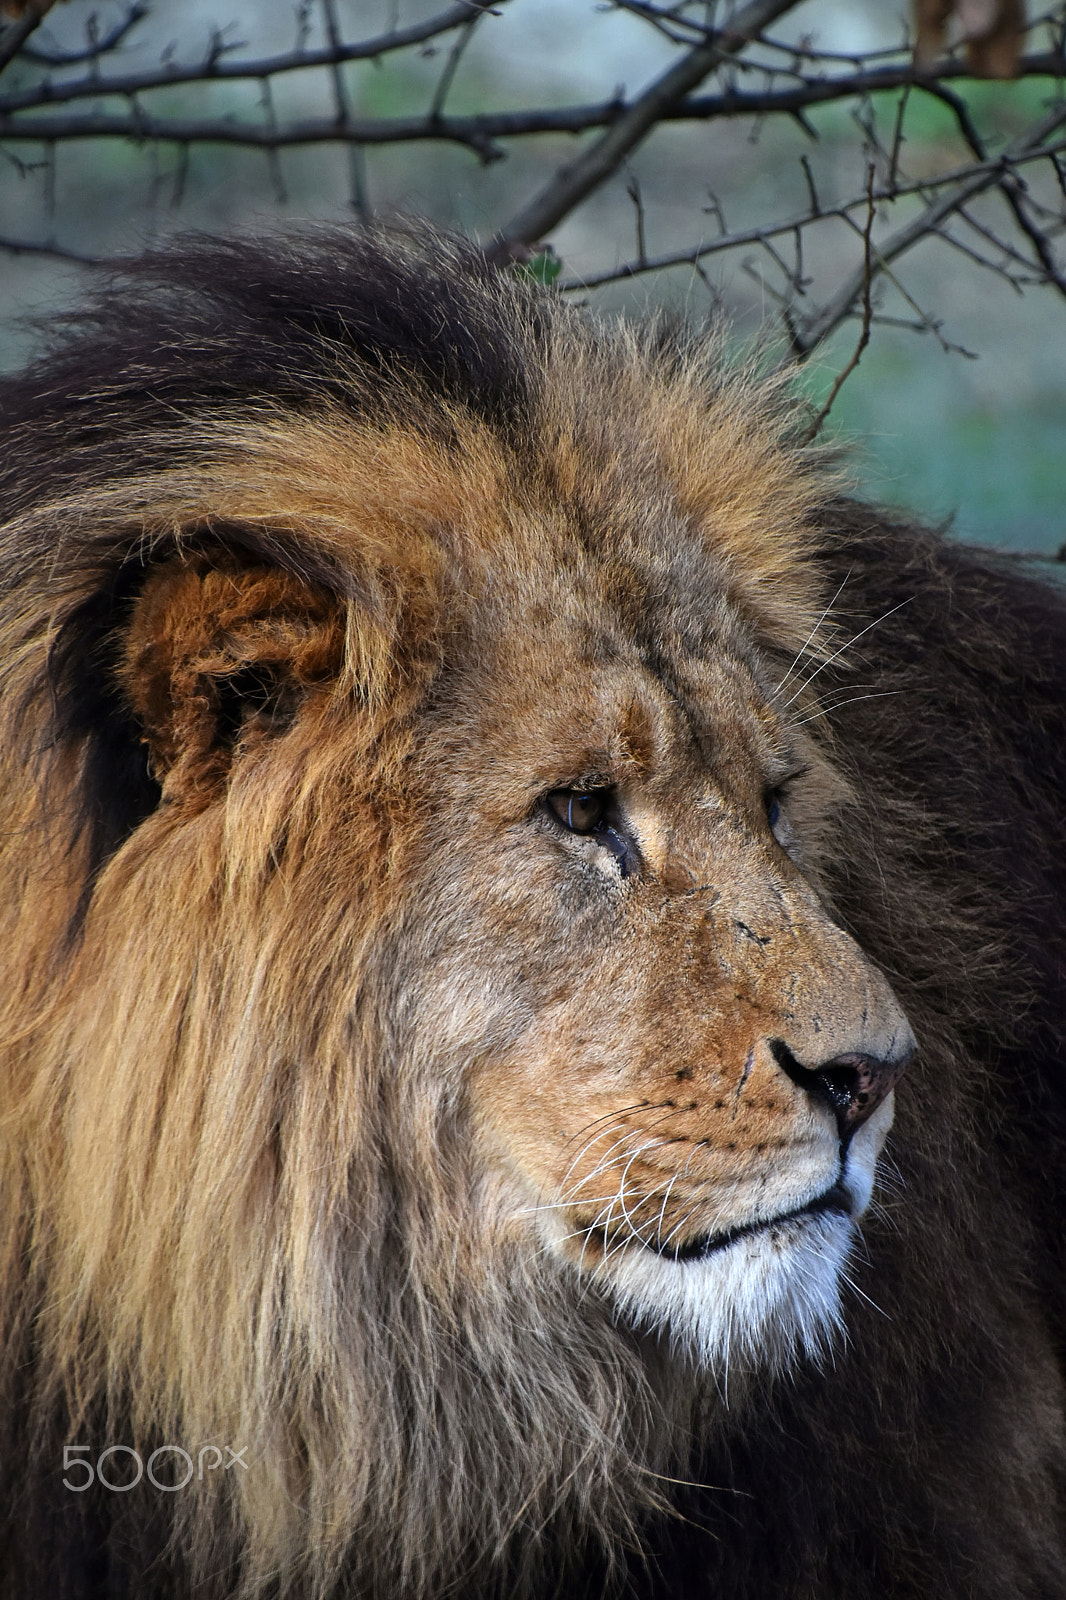 Nikon D5500 + Nikon AF-S DX Nikkor 18-300mm F3.5-6.3G ED VR sample photo. African lion male close up portrait photography